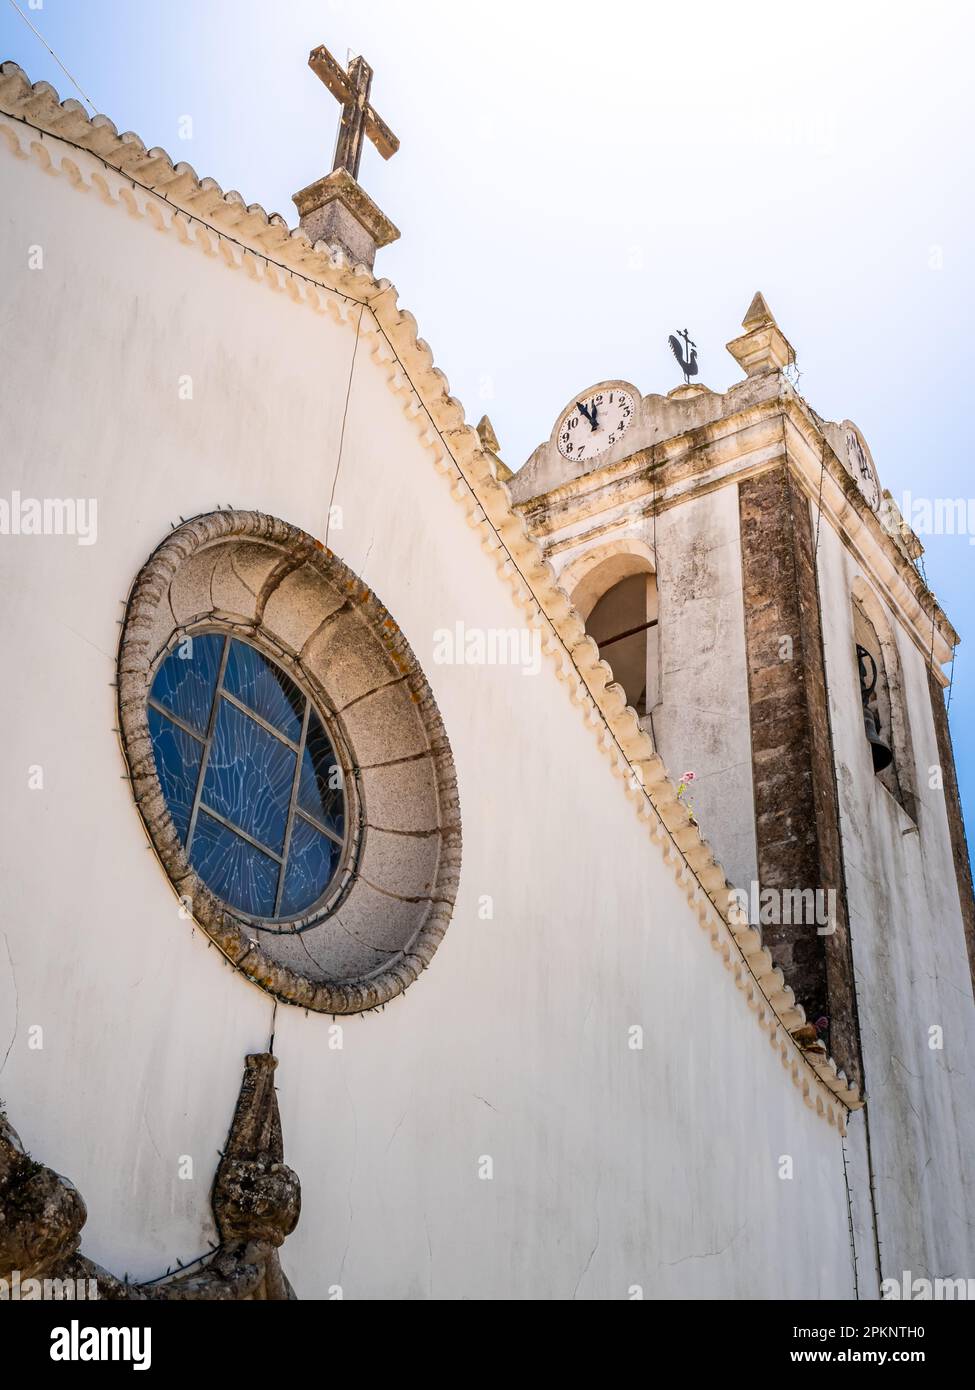 Low angle view of the facade of Parish Church Monchique, Igreja de Nossa Senhora da Conceição, backlit by the sun with a clock reading almost twelve. Stock Photo